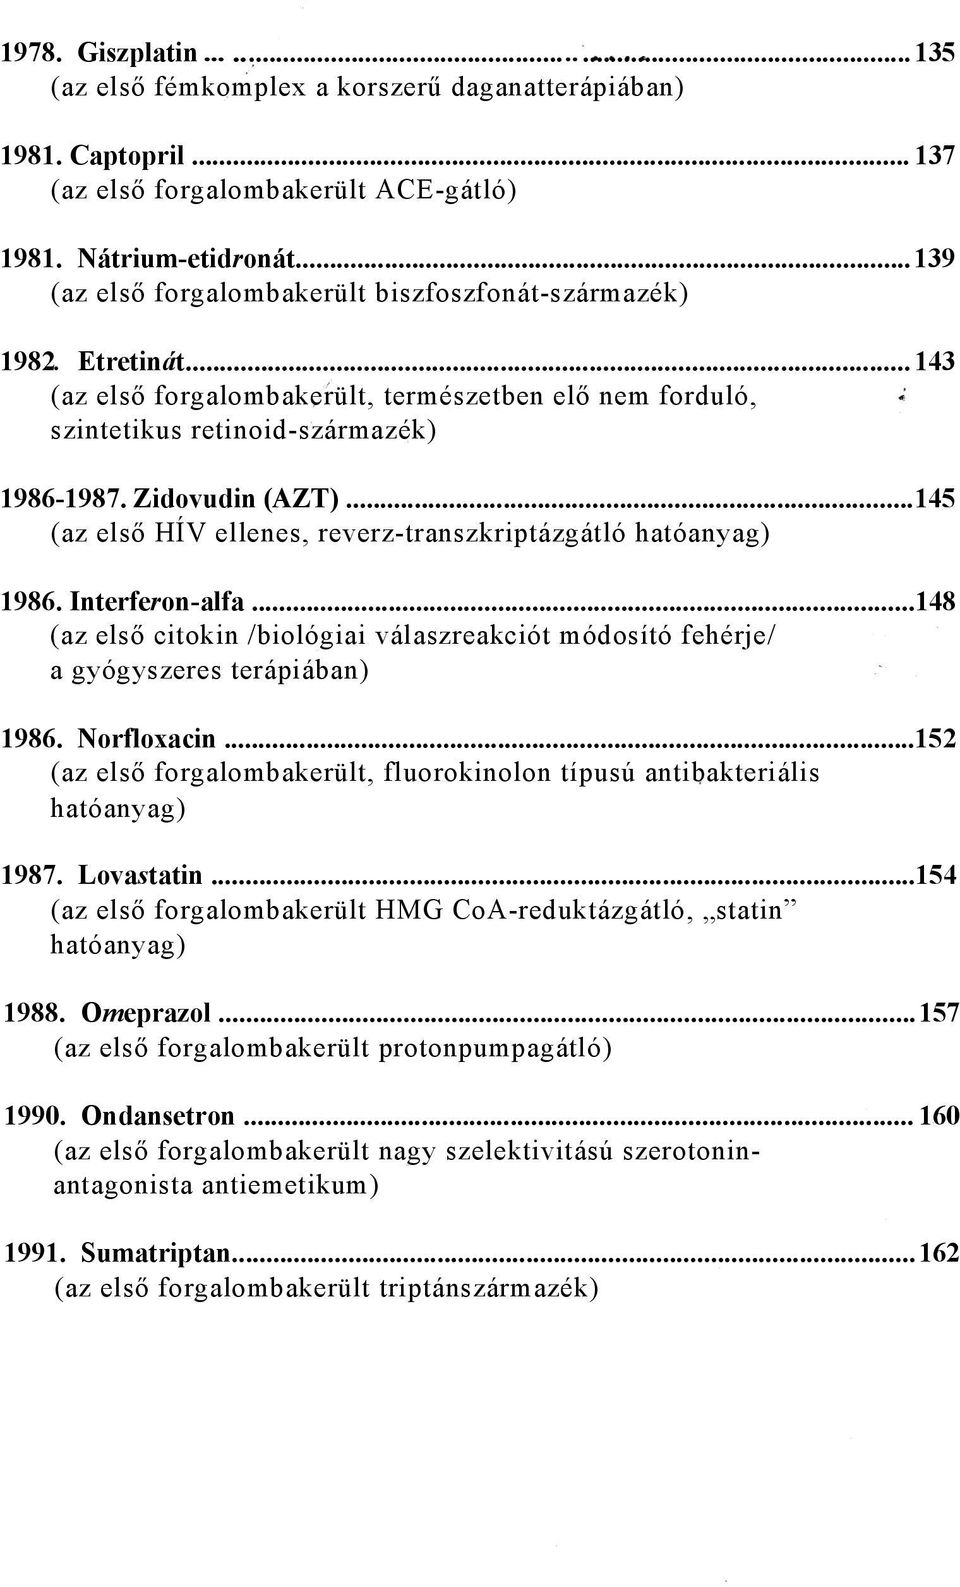 ..145 (az első HÍV ellenes, reverz-transzkriptázgátló hatóanyag) 1986. Interferon-alfa...148 (az első citokin /biológiai válaszreakciót módosító fehérje/ a gyógyszeres terápiában) 1986. Norfloxacin.